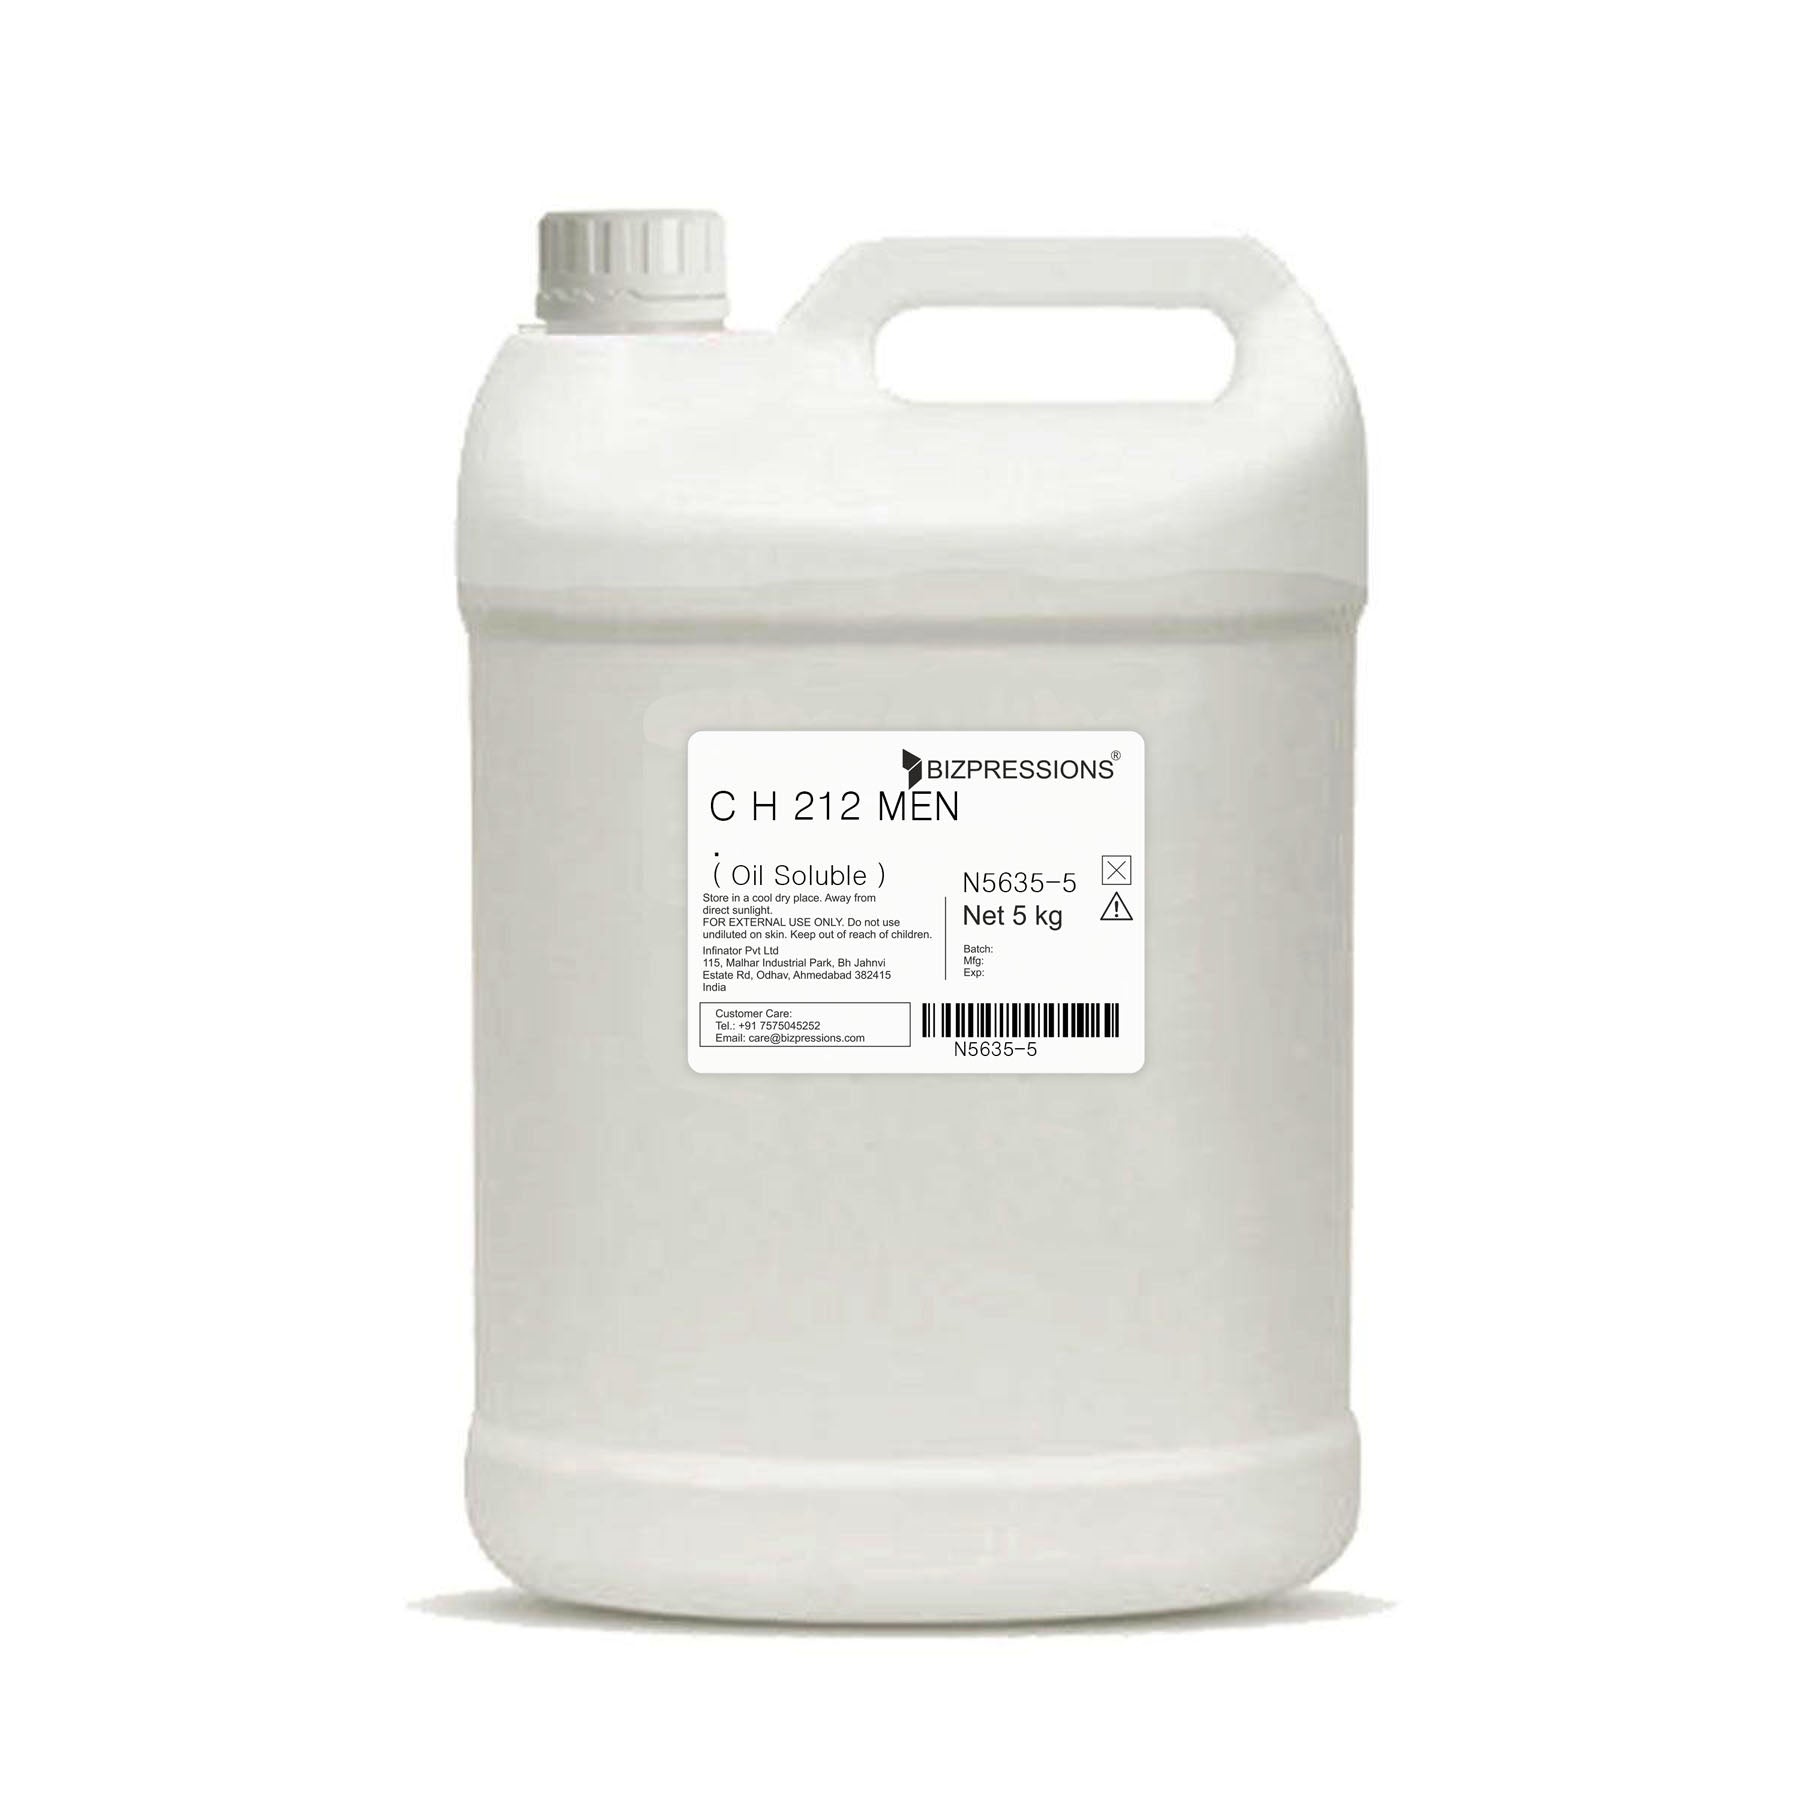 C H 212 MEN - Fragrance ( Oil Soluble ) - 5 kg